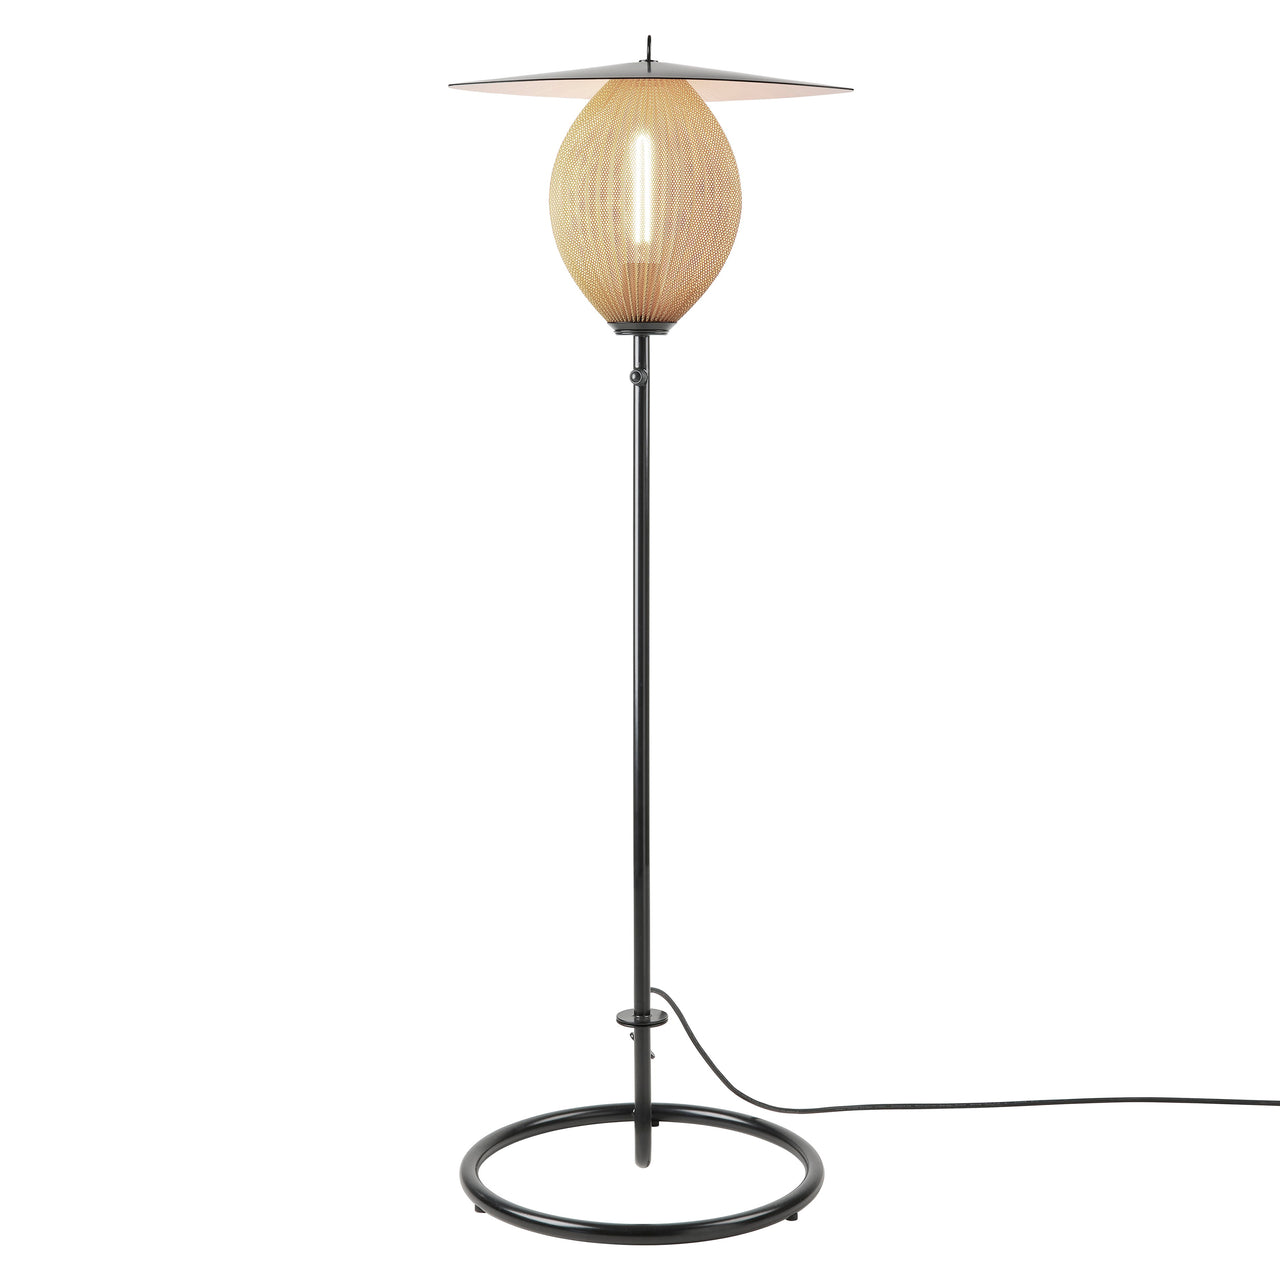 Satellite Outdoor Floor Lamp: Cream White